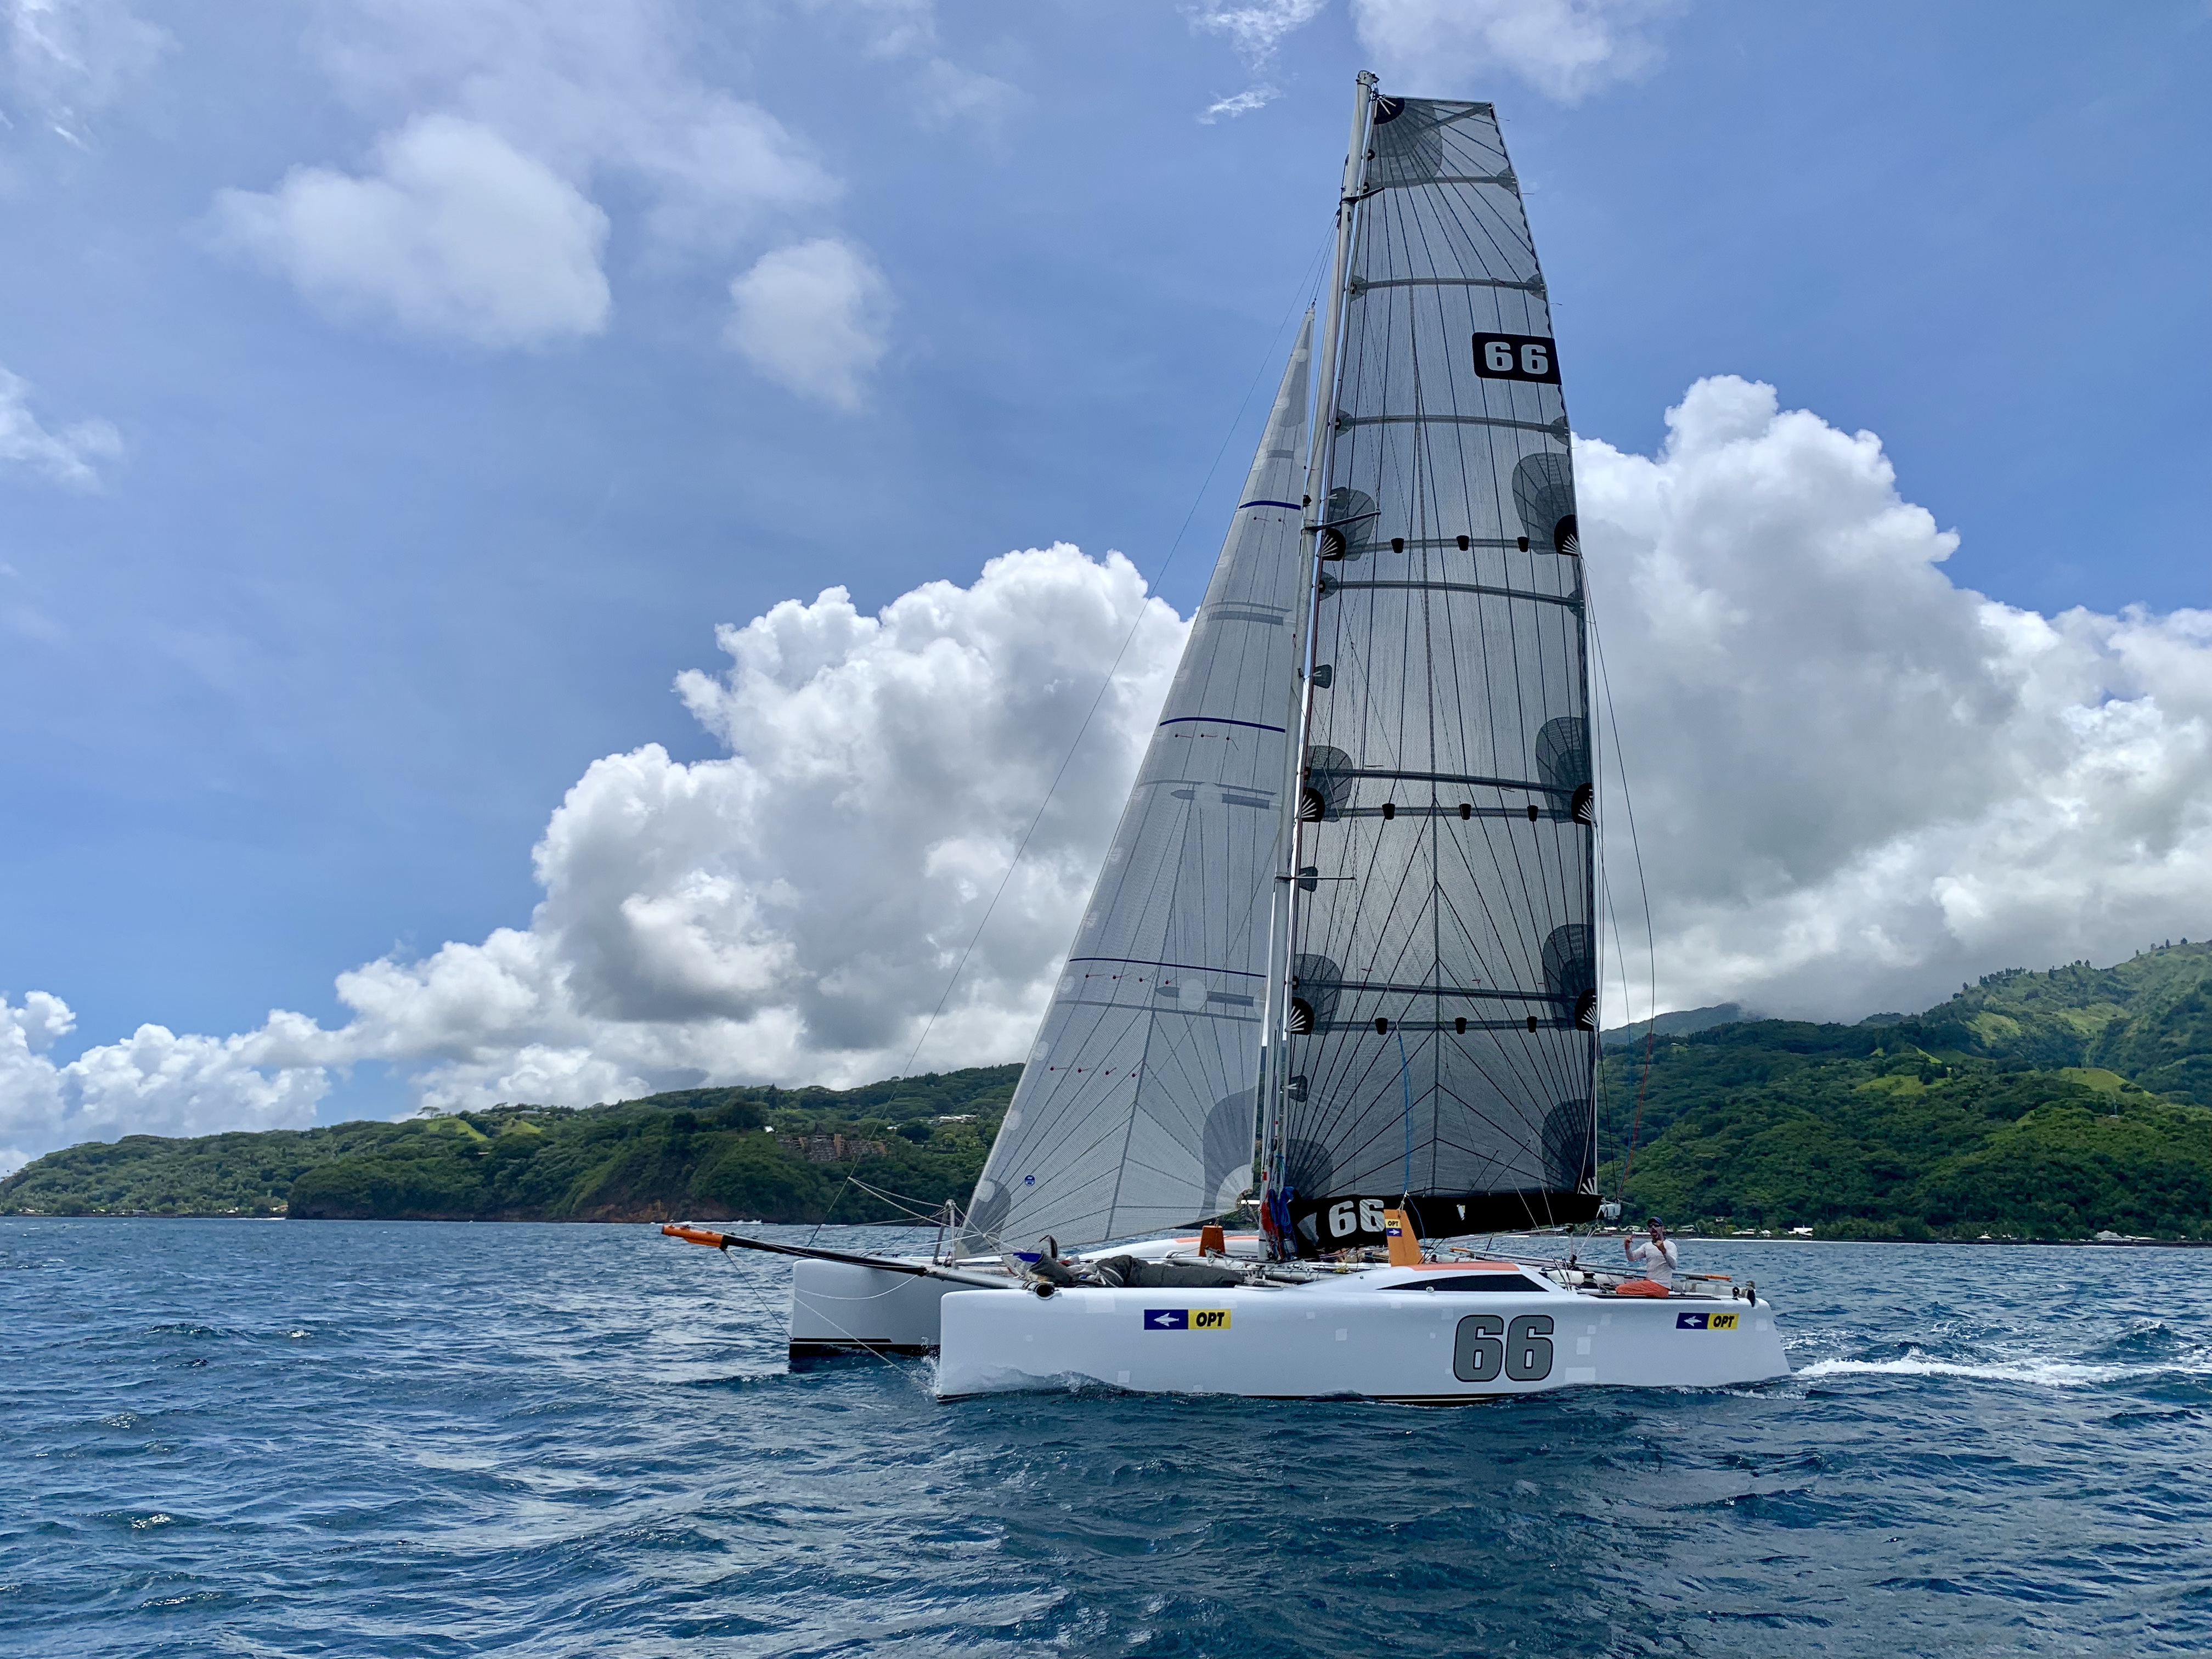 Le 66, nouveau catamaran de course de Thierry Hars, a bouclée la traversée entre Tahiti et Tetiaroa en 7 heures et 3 minutes.